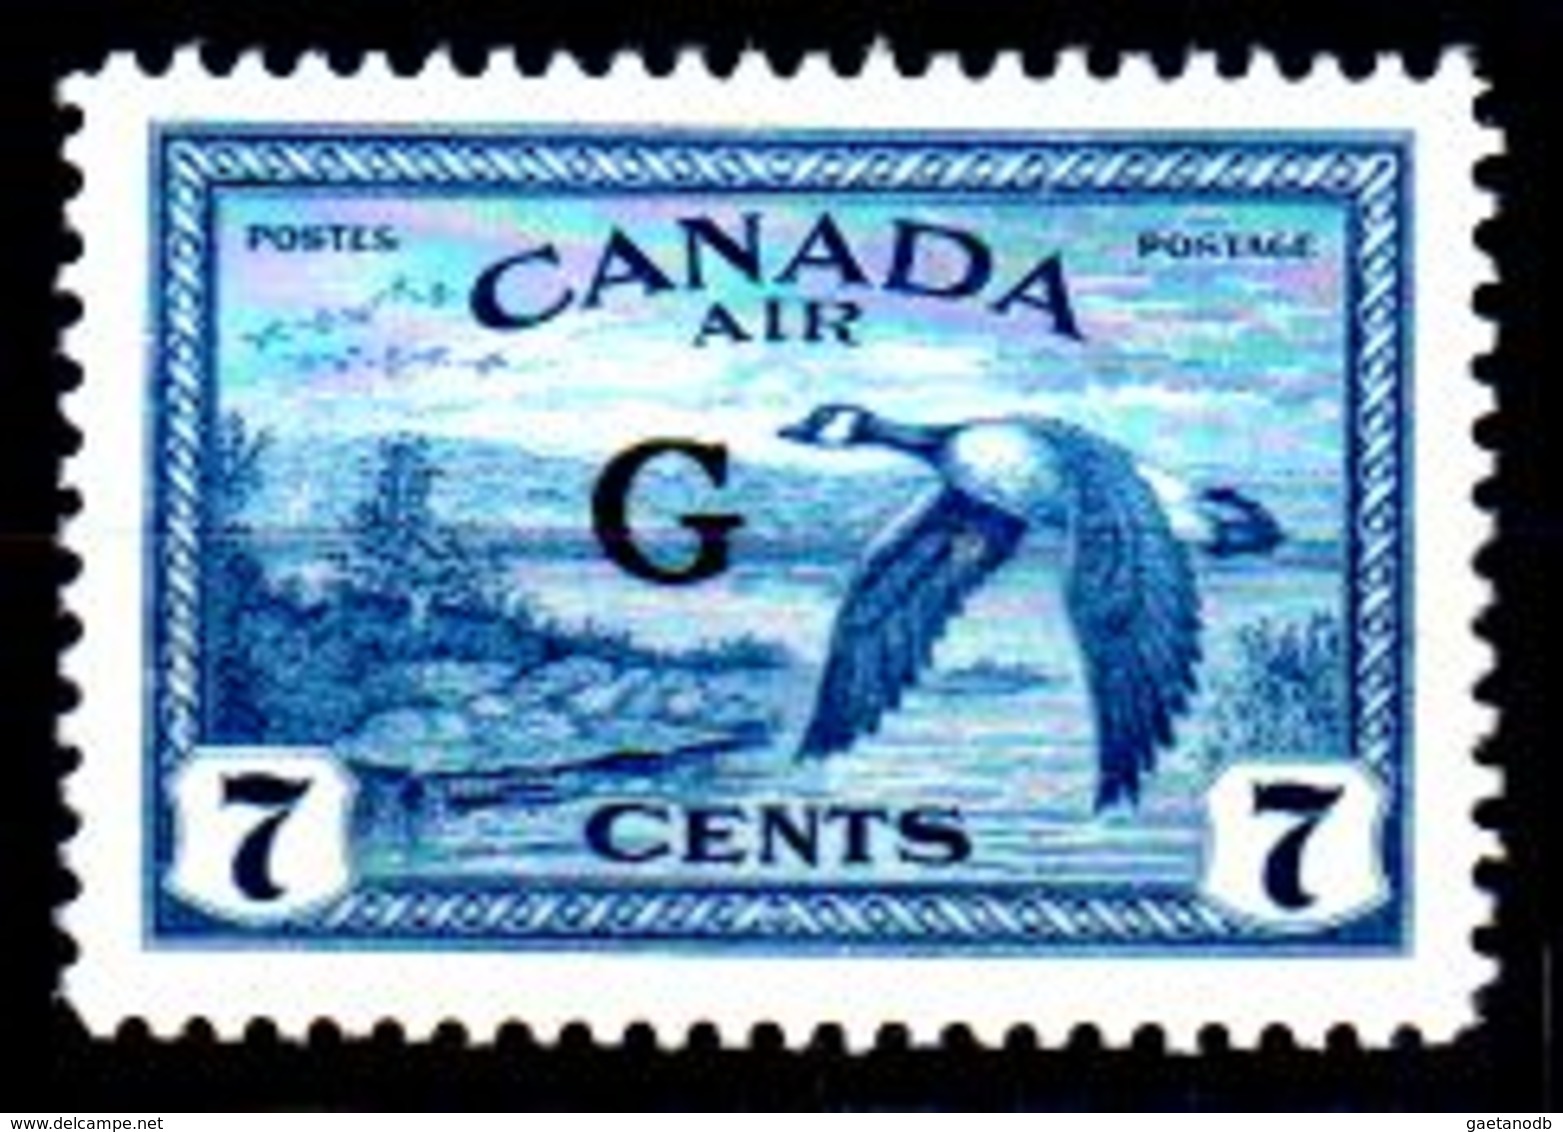 B364-Canada: SERVIZI 1950-52 (++) MNH - Senza Difetti Occulti - - Overprinted